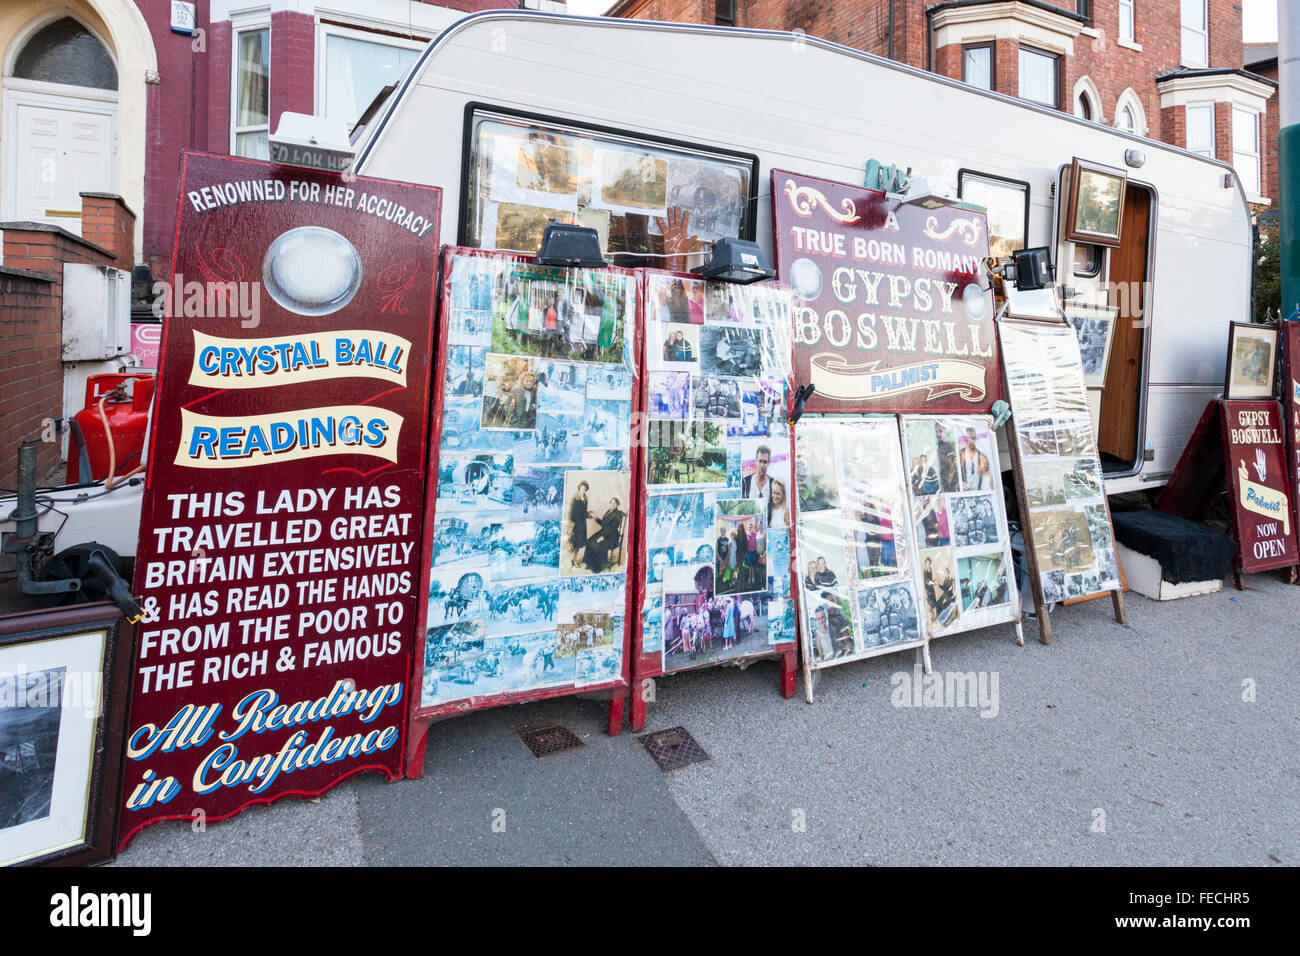 Wohnwagen mit boards Werbung Gypsy Boswell, crystal ball Reader geben die Messwerte an ein SideShow-Gerät Anziehung, Goose Fair, Nottingham, England, Großbritannien Stockfoto